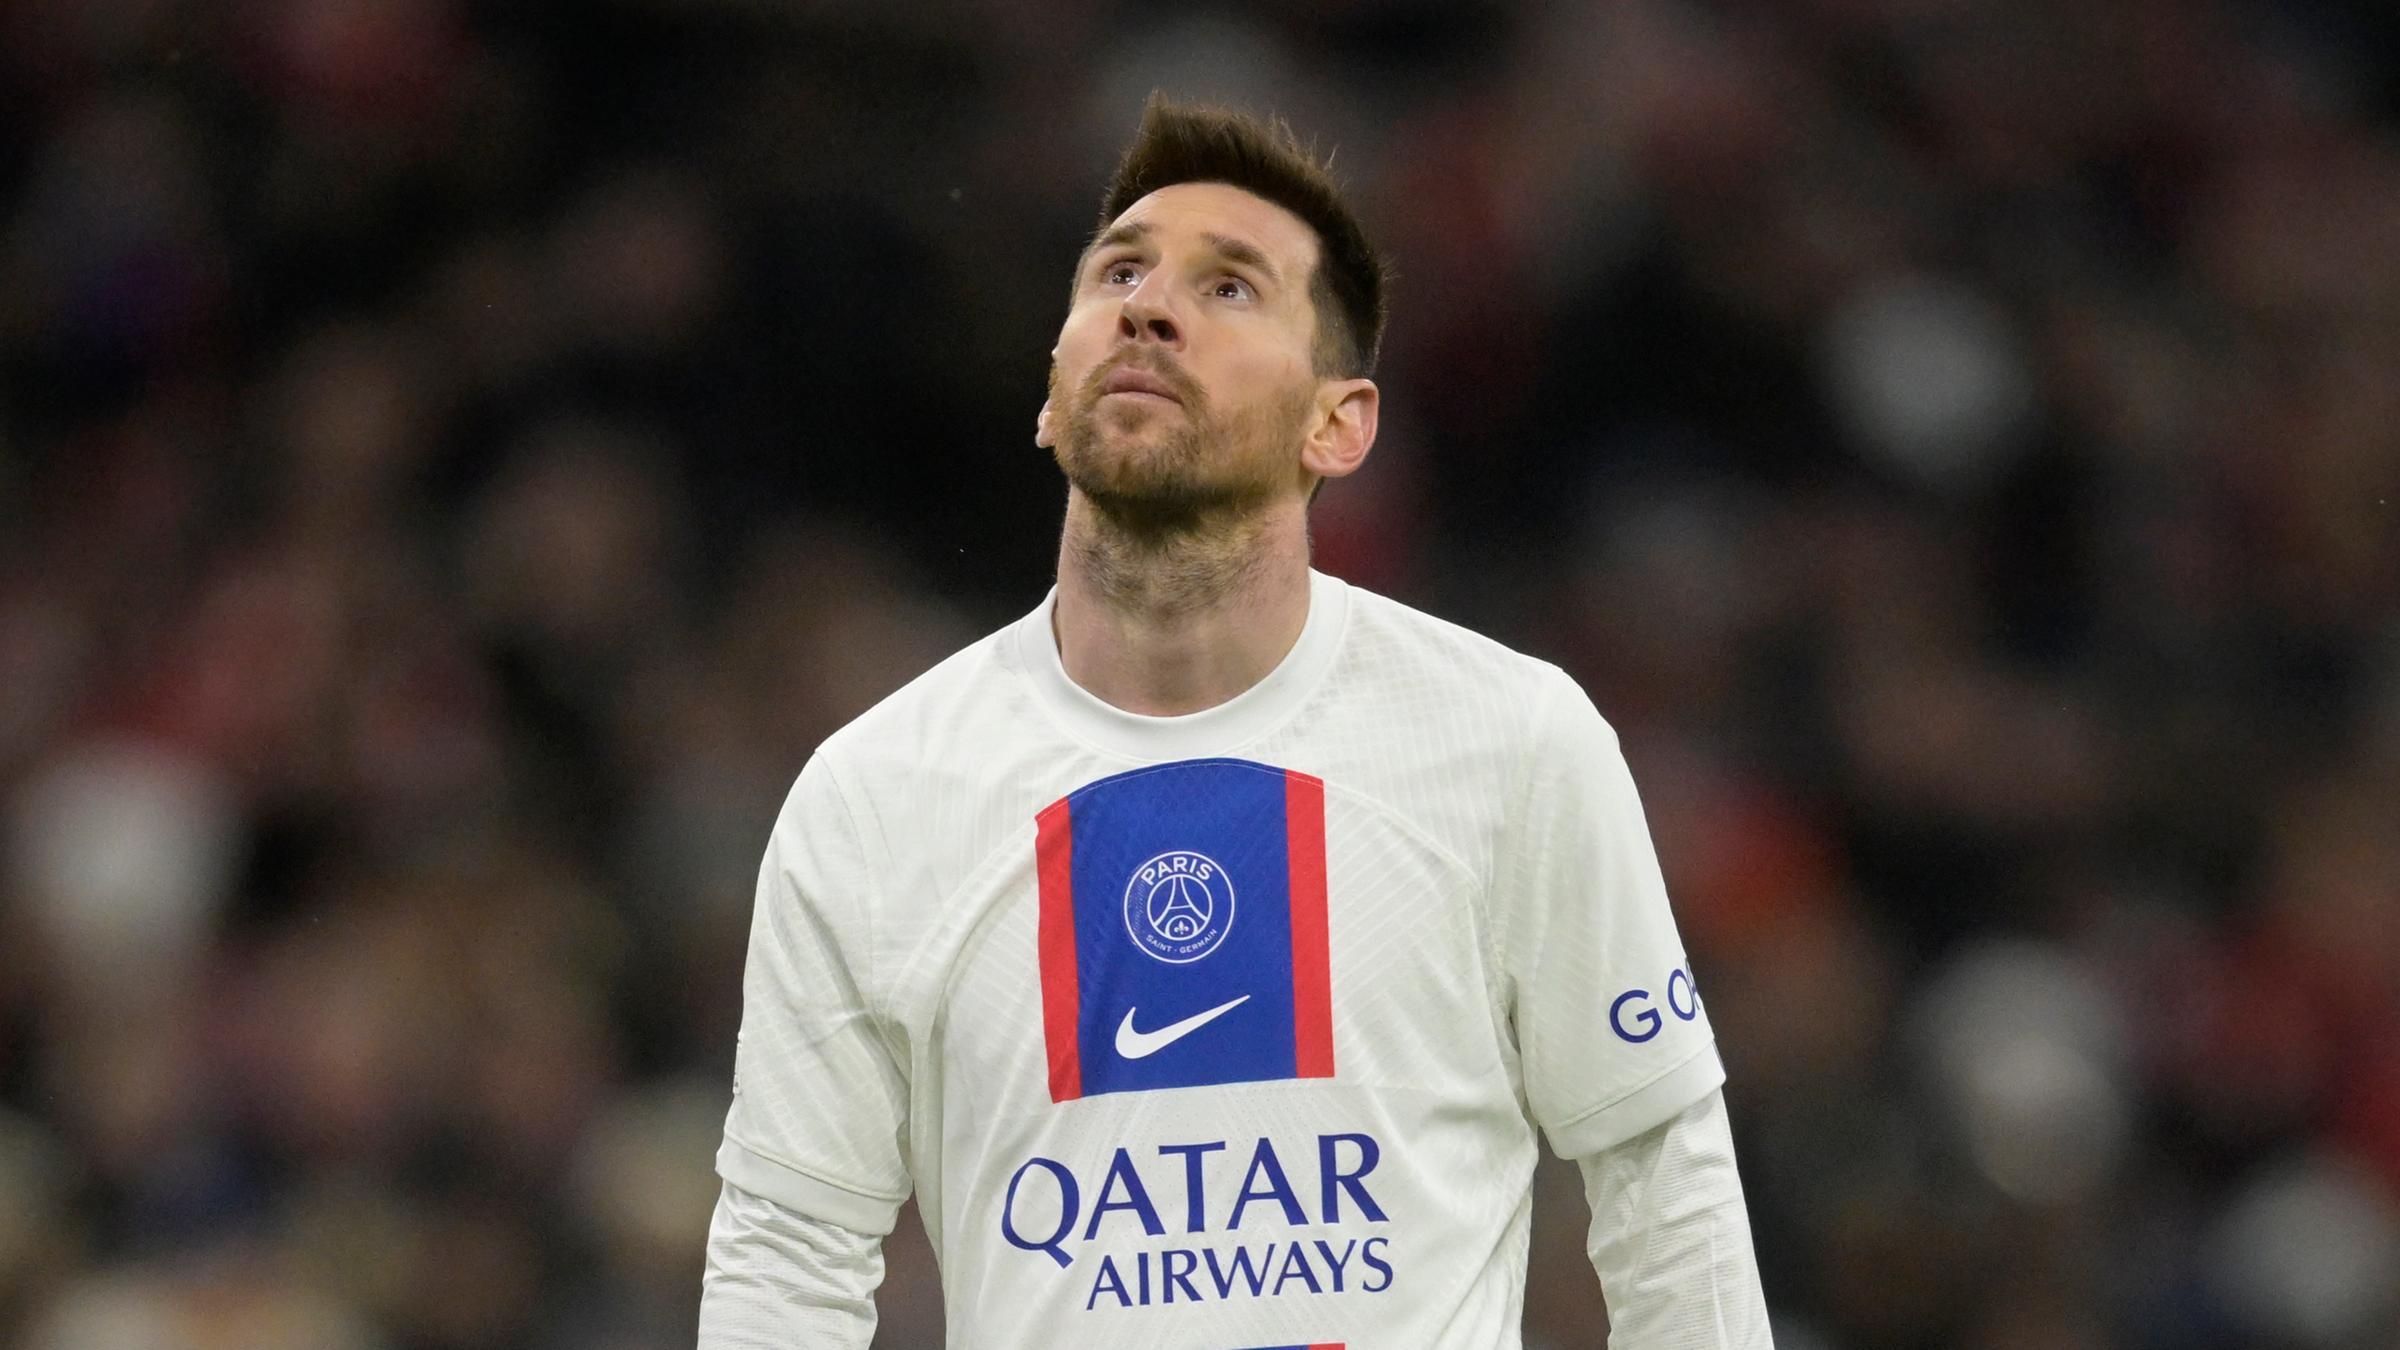 Champions League, Bayern München - PSG am 8. März 2023: Lionel Messi schaut in den Himmel